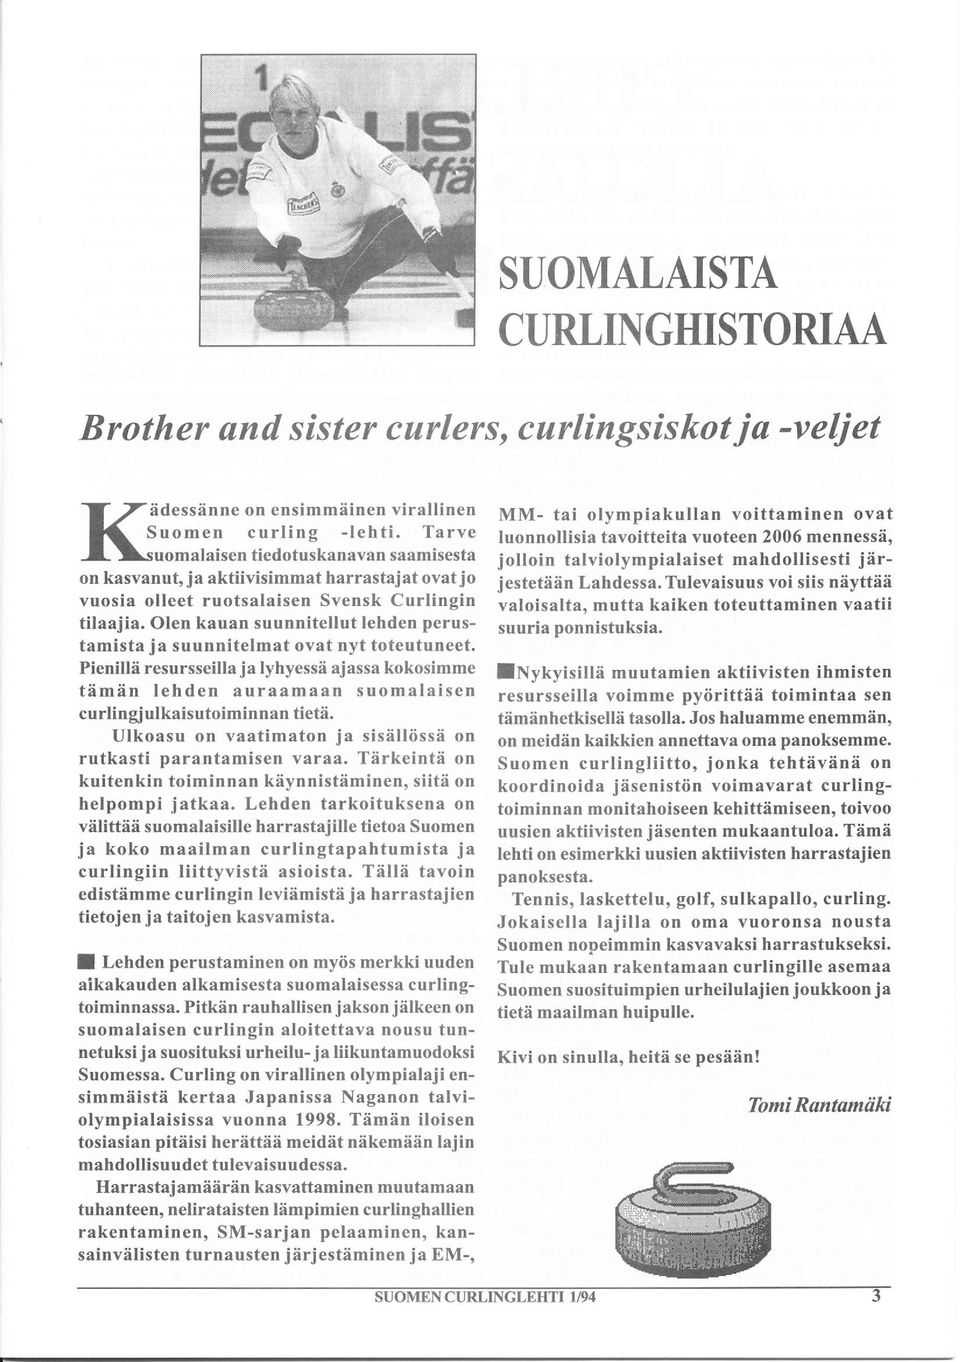 suunnitelmat ovat nyt toteutuneet. Pienillä resursseilla ja lyhyessä ajassa kokosimme tämän lehden auraamaan suomalaisen curlingjulkaisutoiminnan tietä.